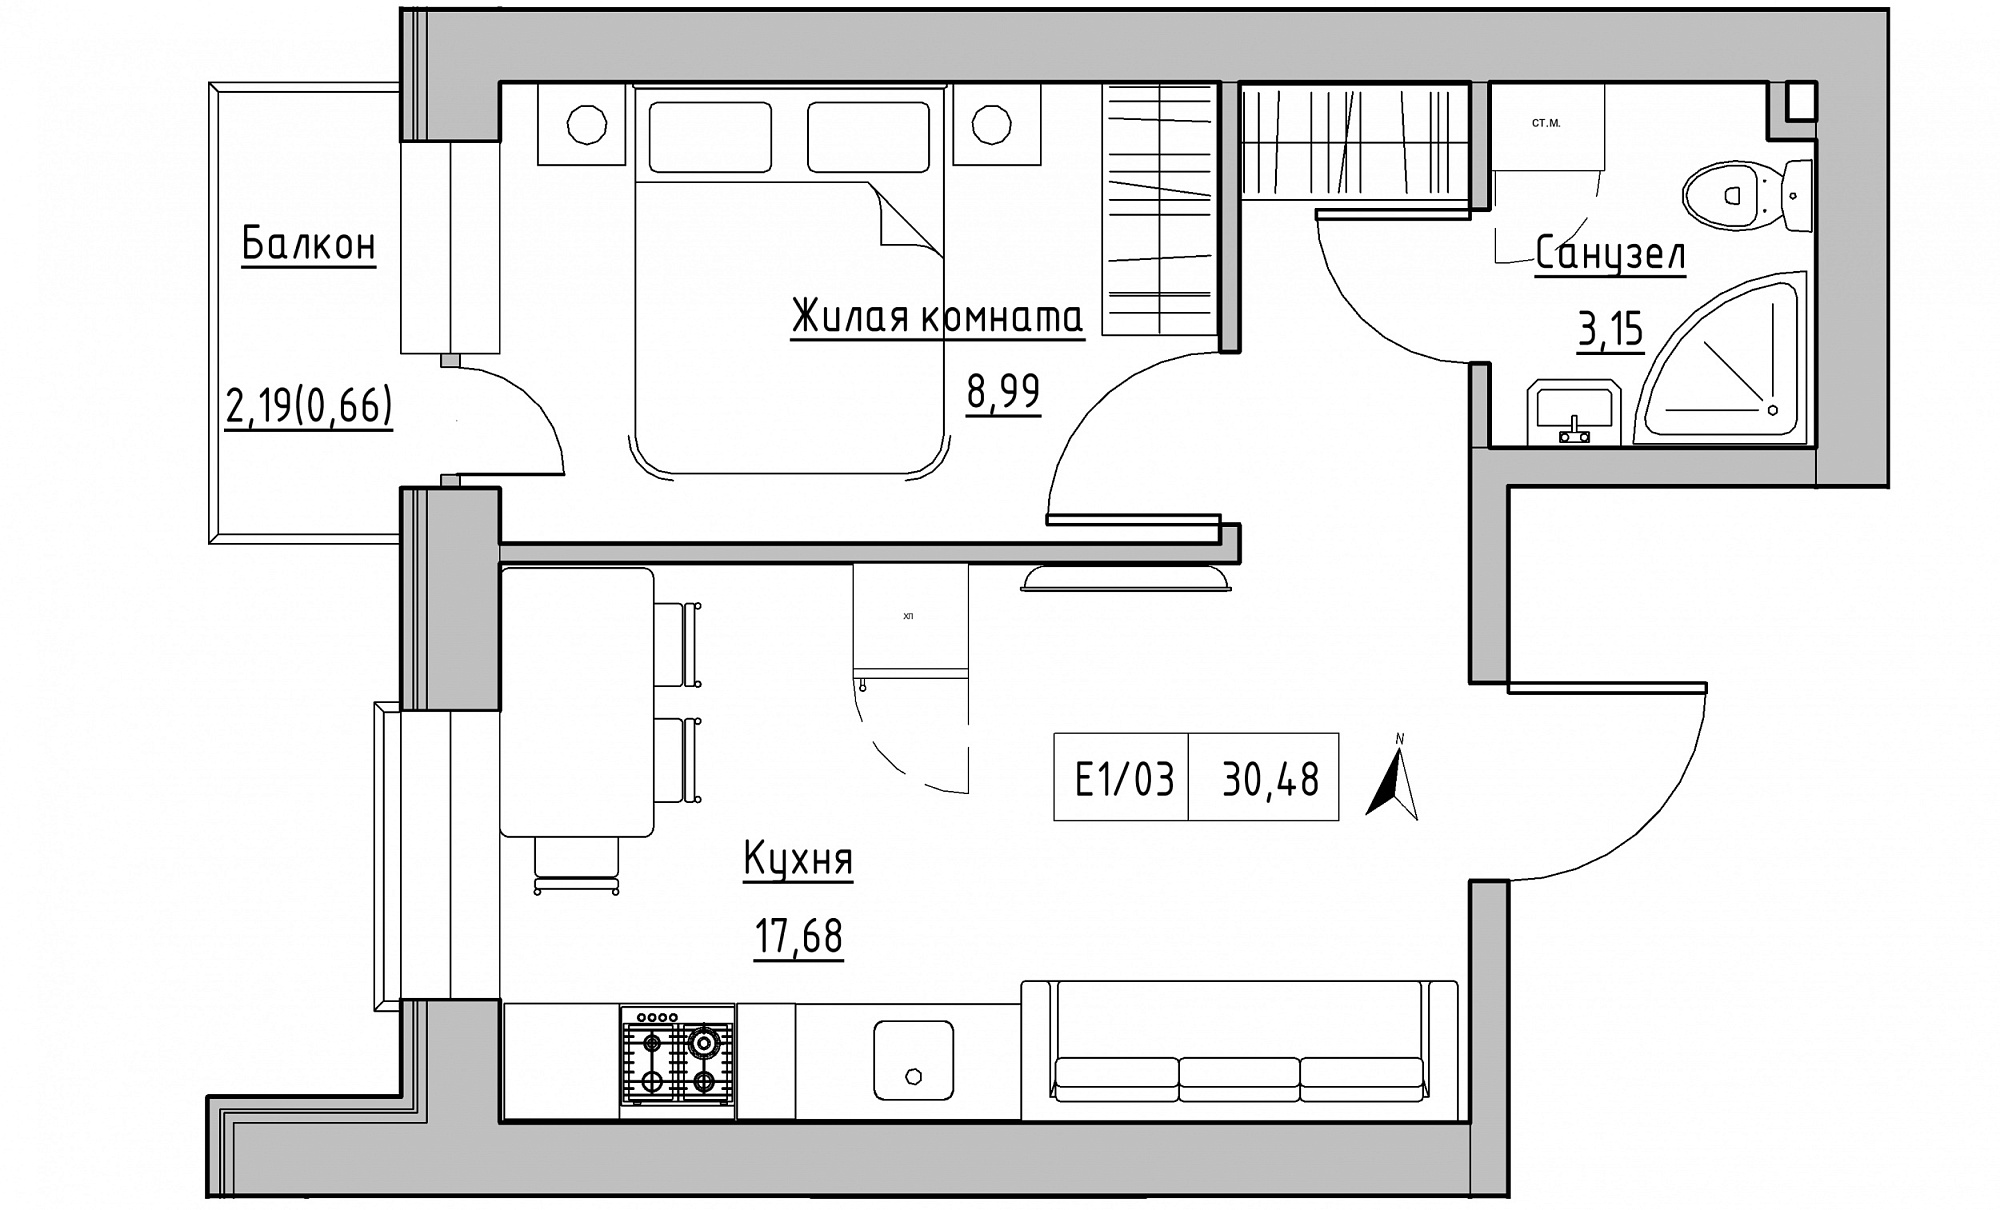 Планировка 1-к квартира площей 30.48м2, KS-015-03/0003.